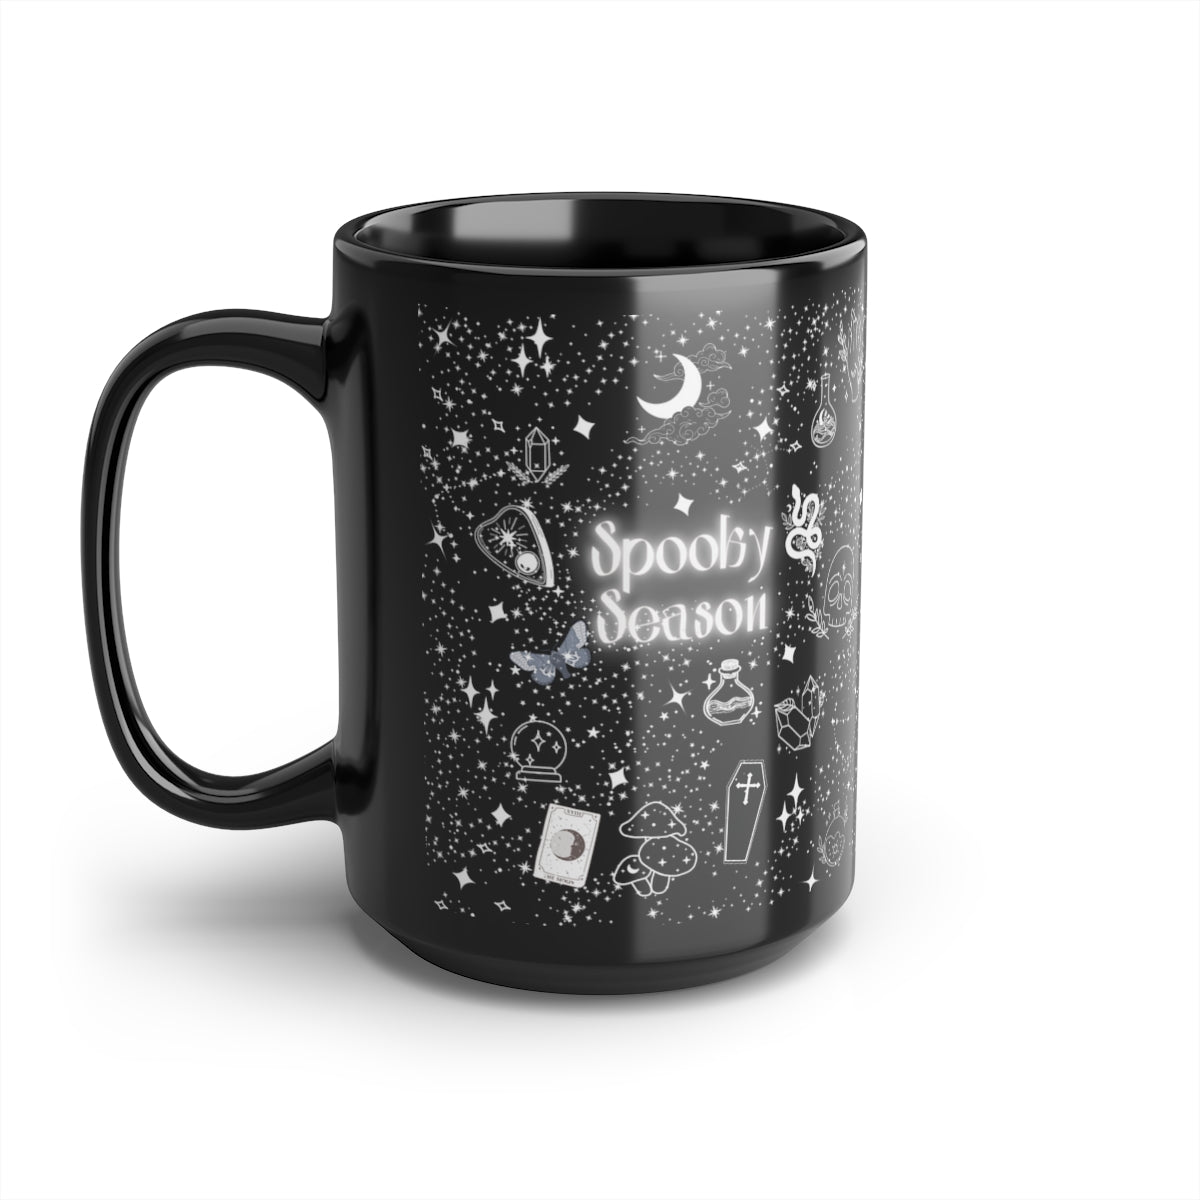 Celestial Spooky Season Mug